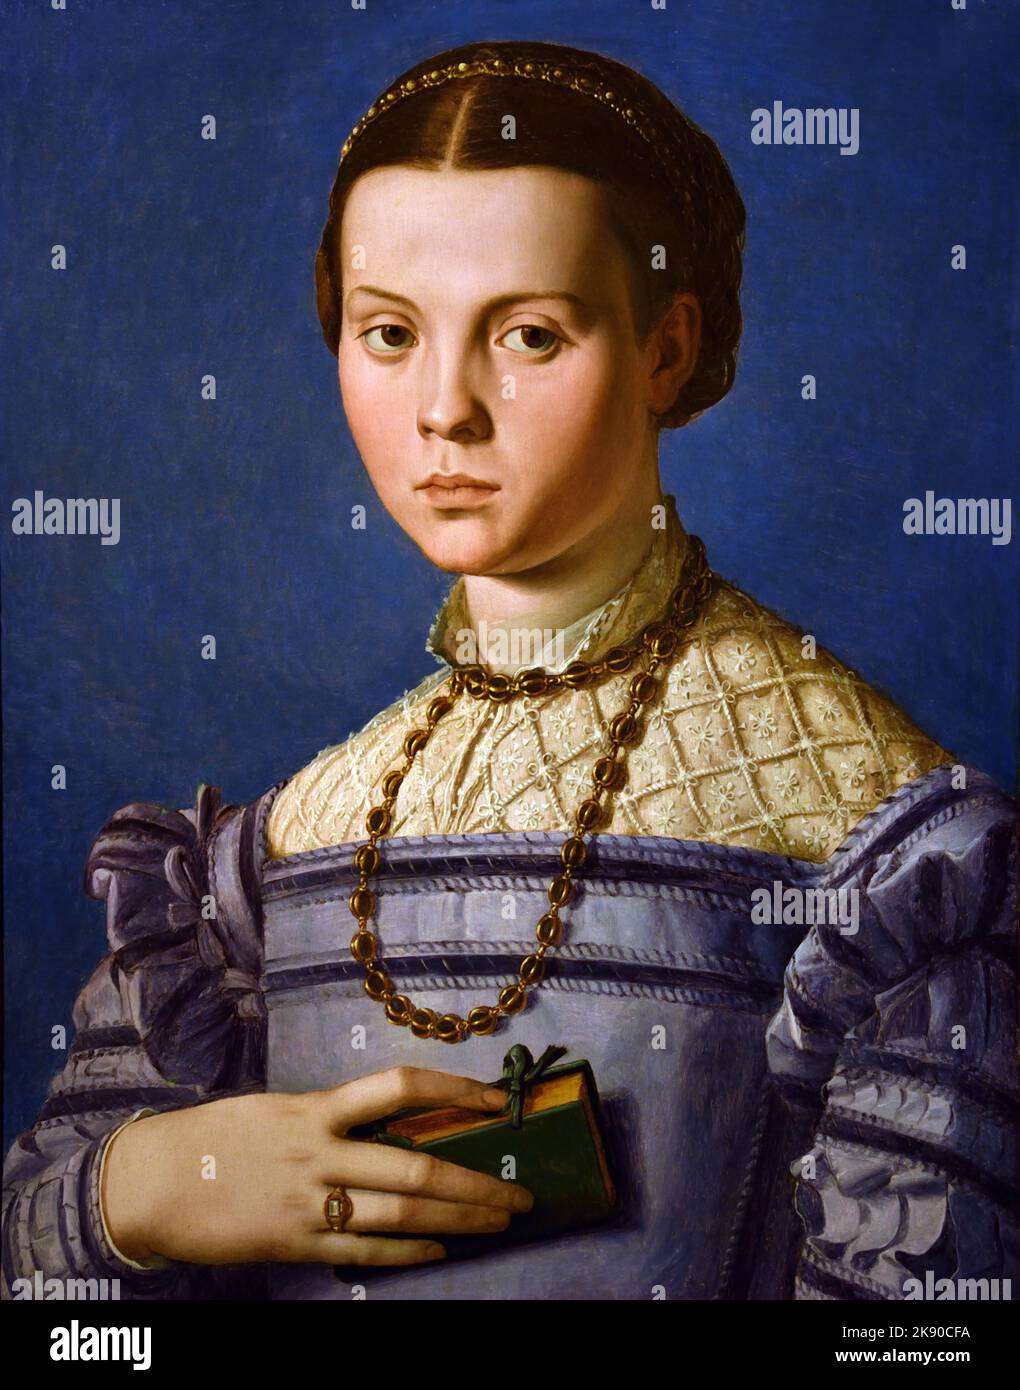 Porträt eines jungen Mädchens mit einem Buch 1545 von Agnolo Bronzino, Manierismus, (Spätrenaissance), Florenz, Italien. Stockfoto